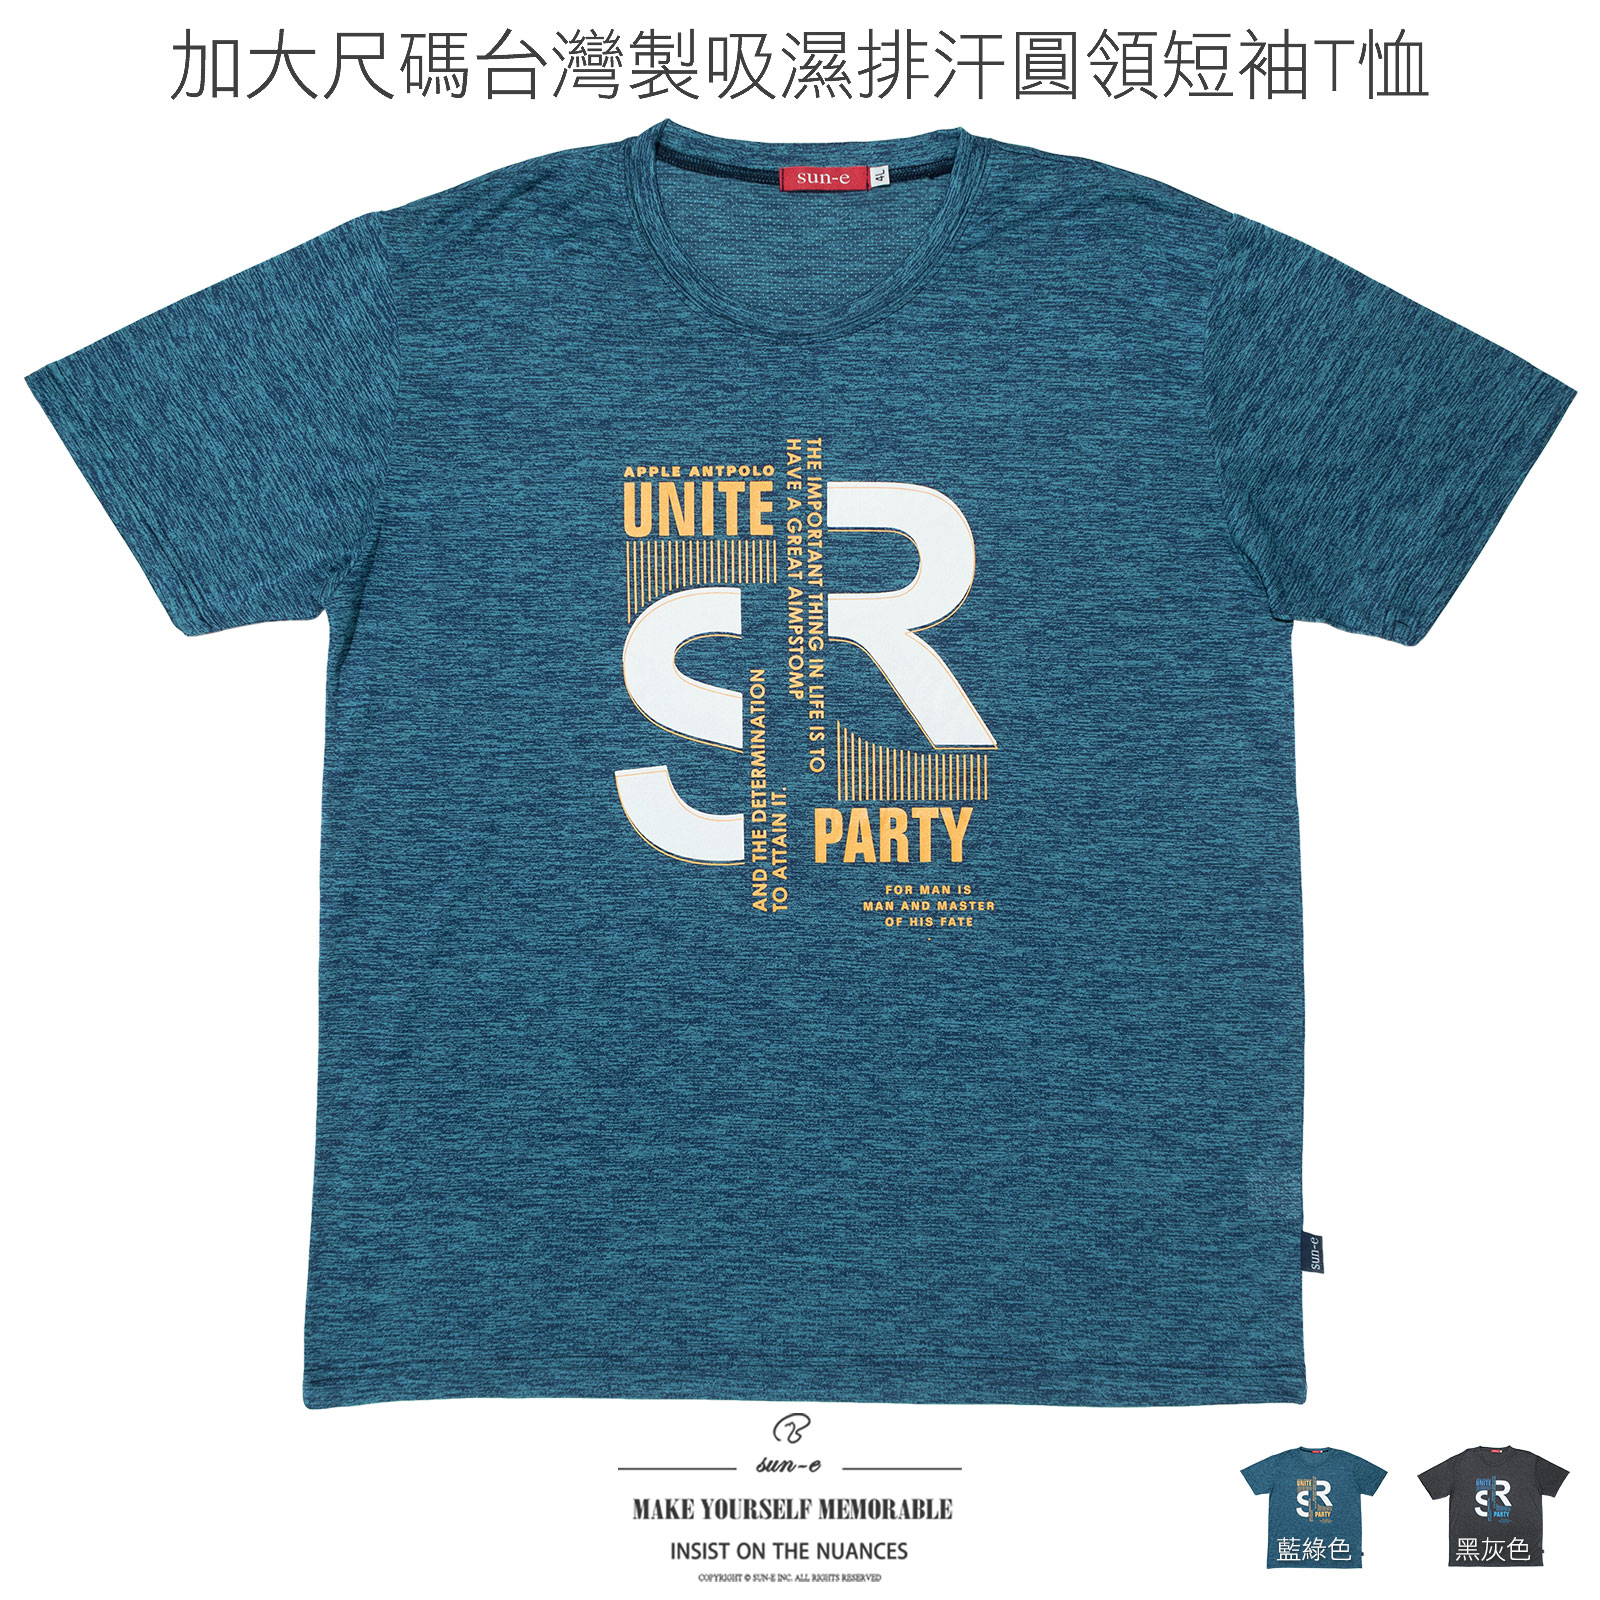 加大尺碼T恤 吸濕排汗T恤 台灣製T恤 超彈力短袖T恤 透氣速乾運動T恤 圓領T恤 英文字T恤 大尺碼男裝 機能性布料短袖上衣 潮流彈性短Tee Big And Tall T-shirt Moisture Wicking T-shirt Made In Taiwan Short Sleeve Crew Neck T-shirts (310-3992-11)藍綠色、(310-3992-21)黑灰色 4L 6L (胸圍:52~63英吋 / 132~160公分) 男 [實體店面保障] sun-e